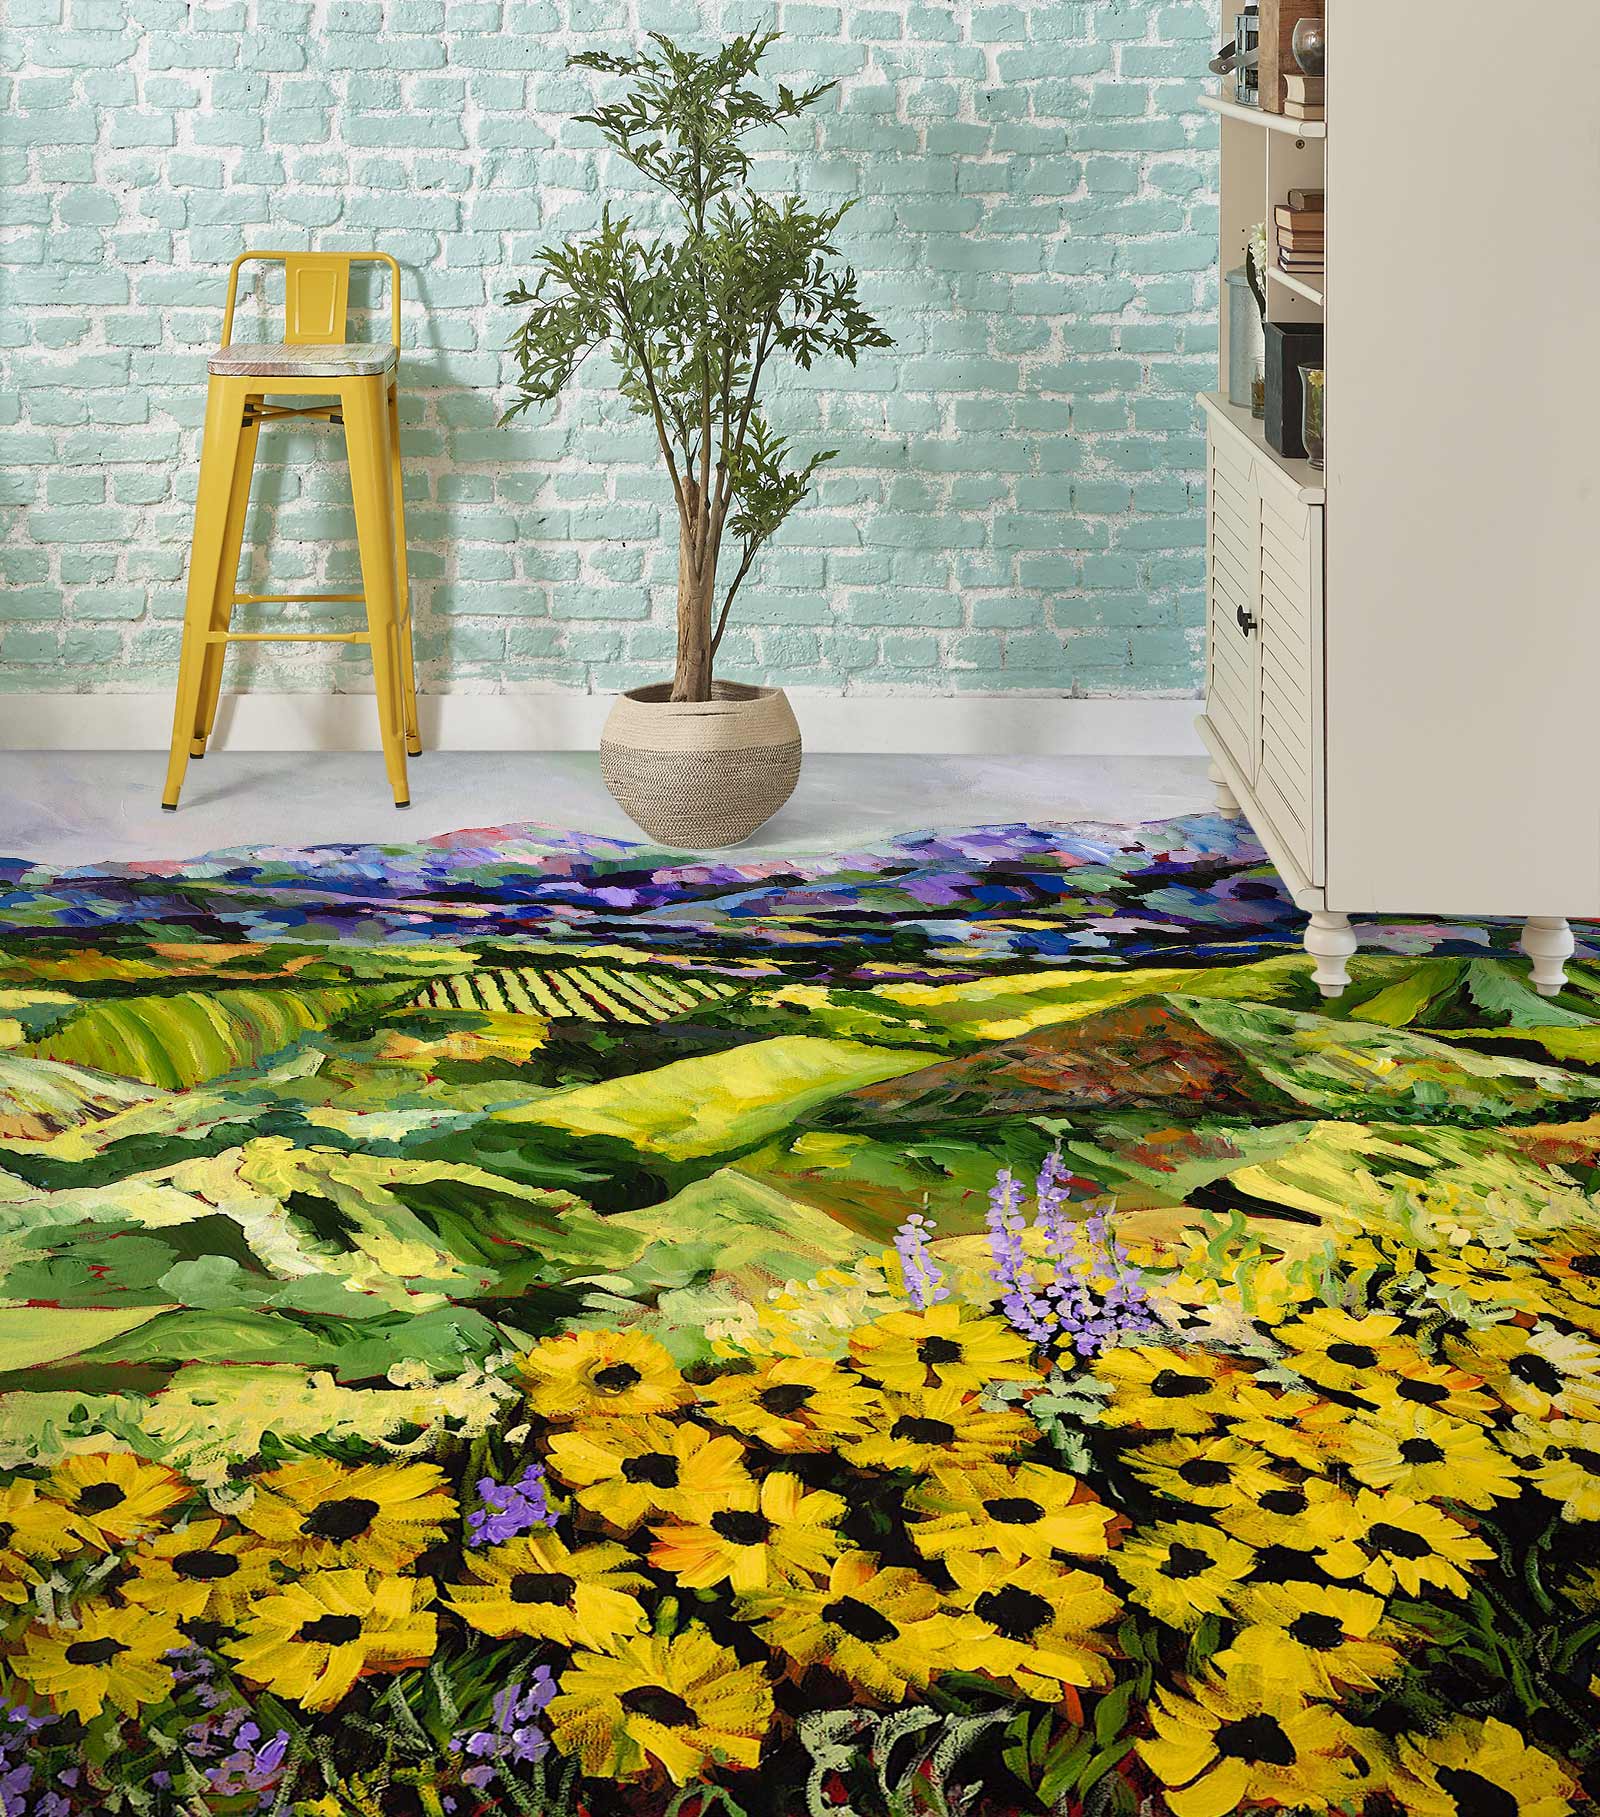 3D Hillside Yellow Daisy Bush 9544 Allan P. Friedlander Floor Mural